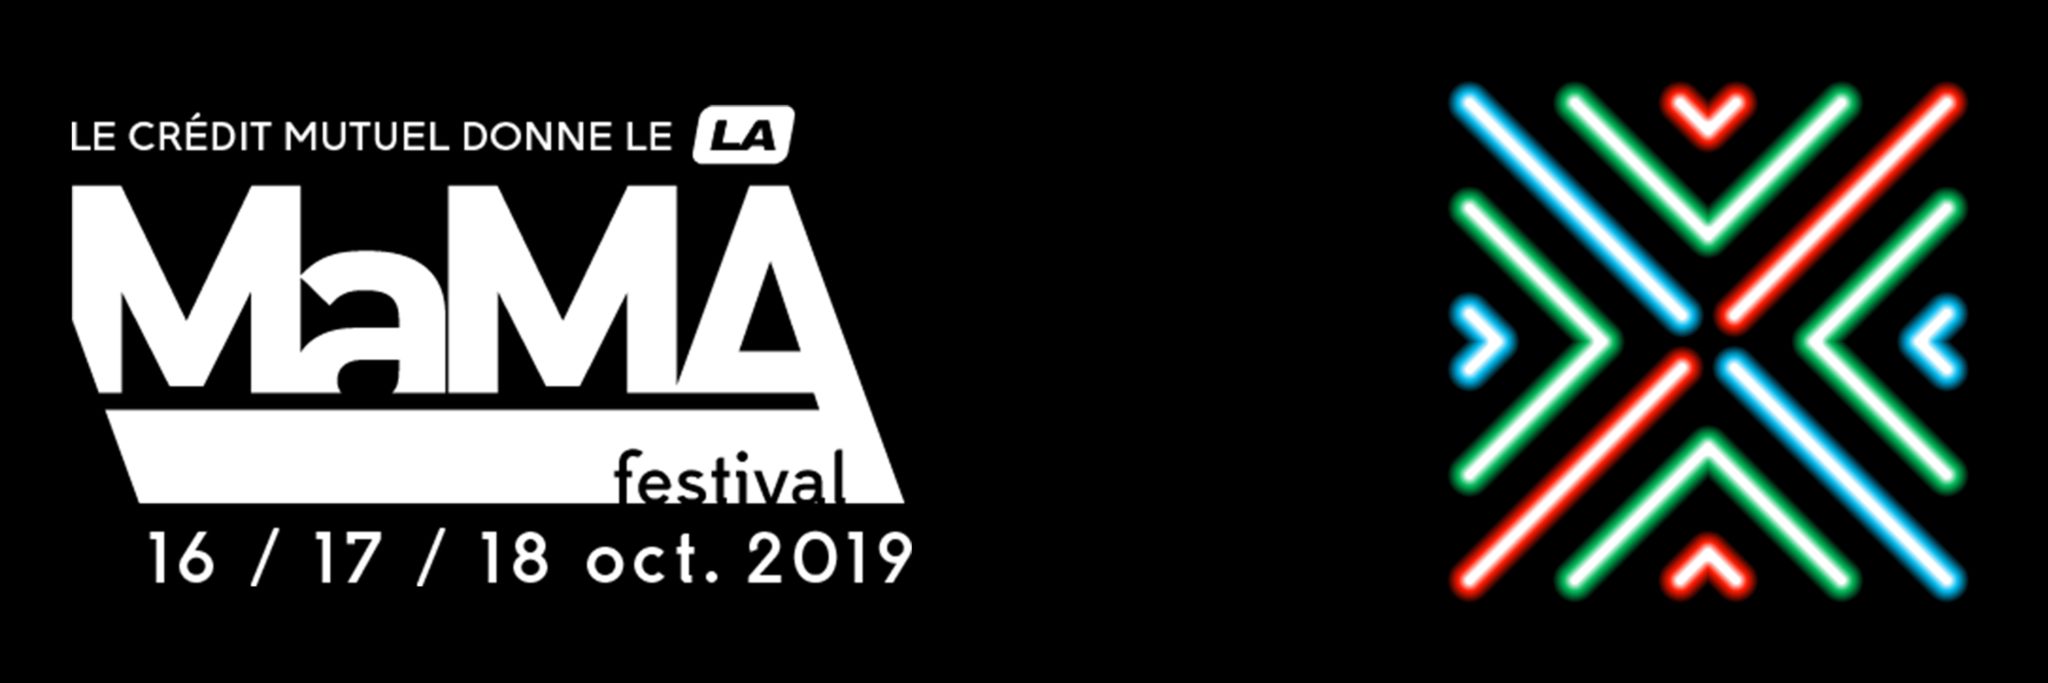 MaMA 2019 Festival affiche